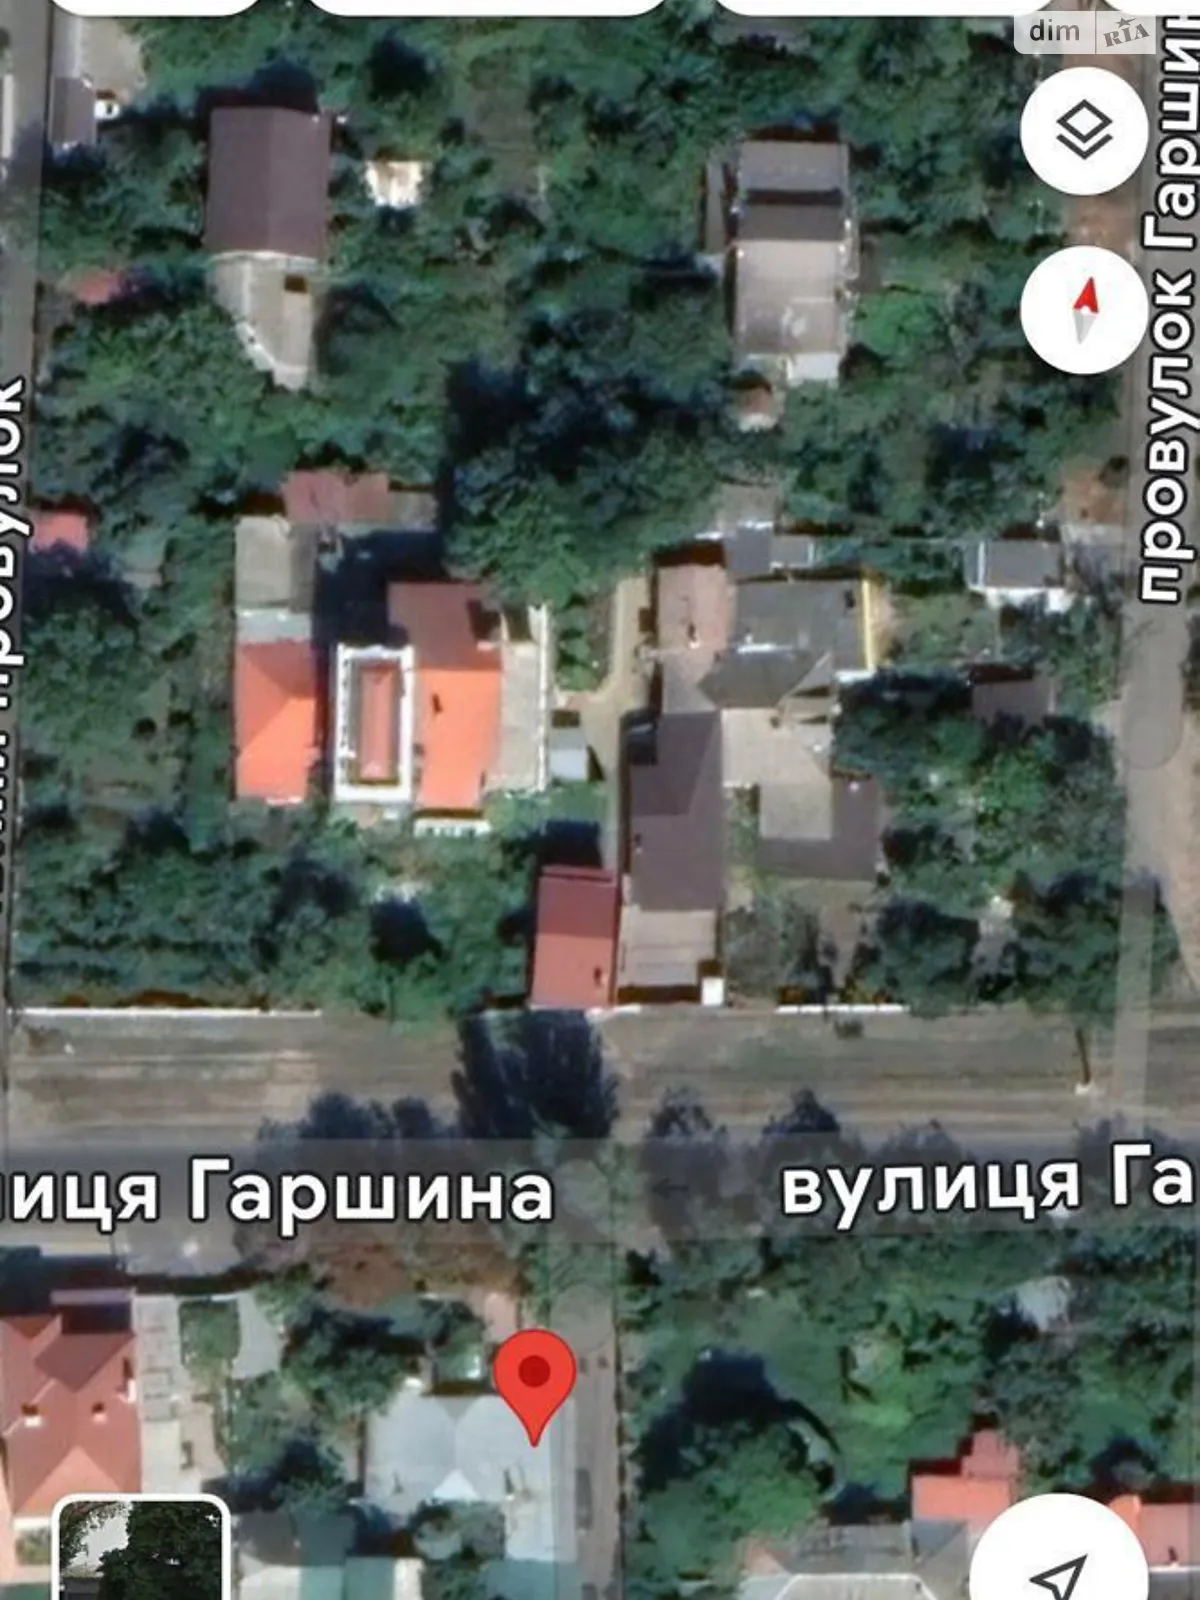 Продается земельный участок 5.5 соток в Одесской области - фото 2